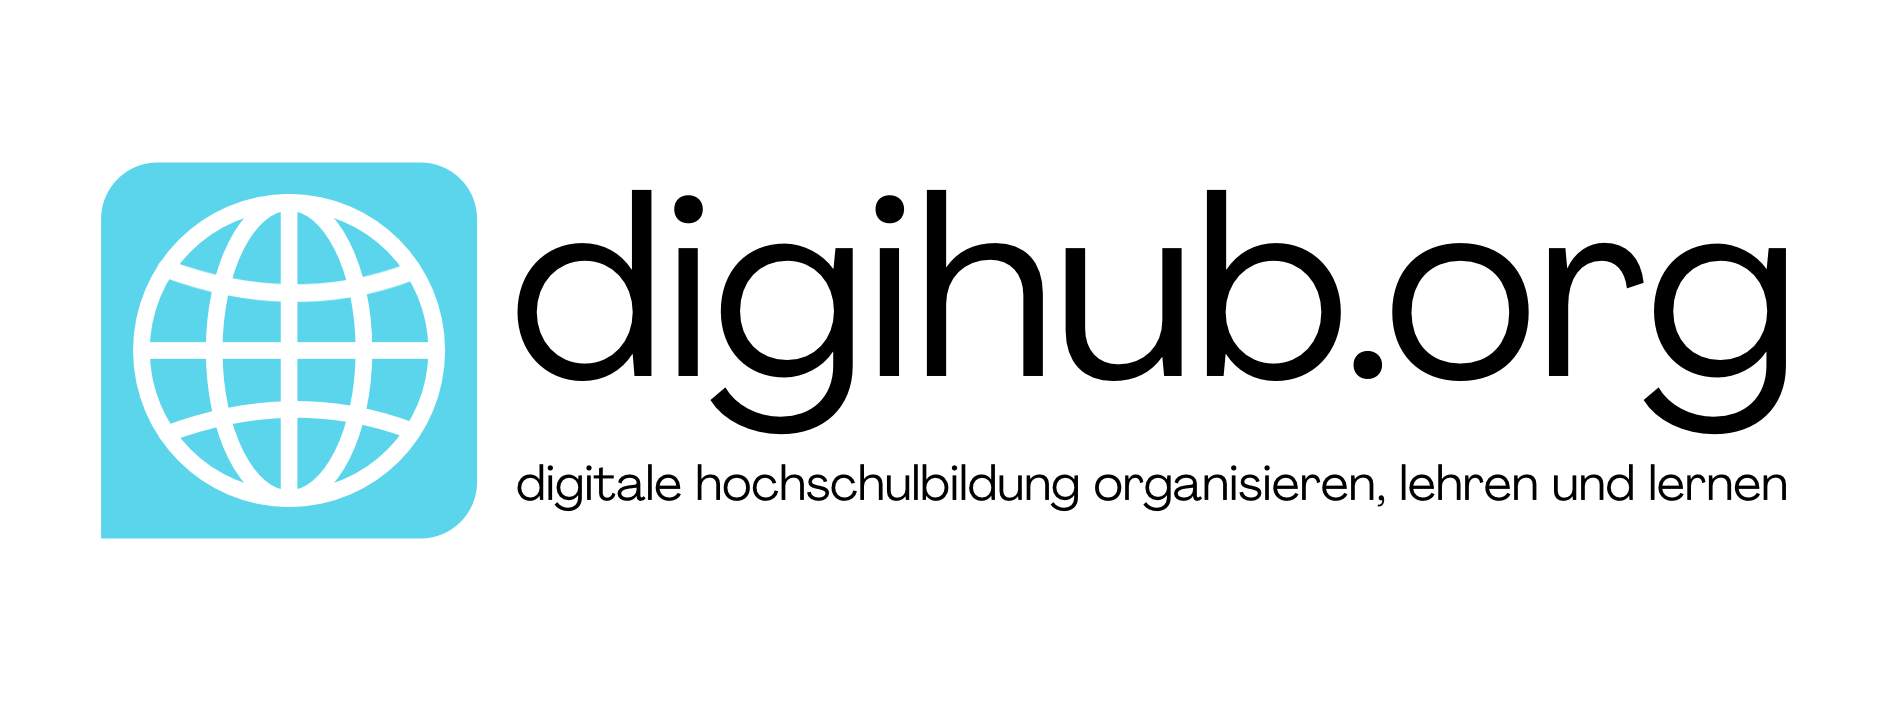 digihub.org logo weiß